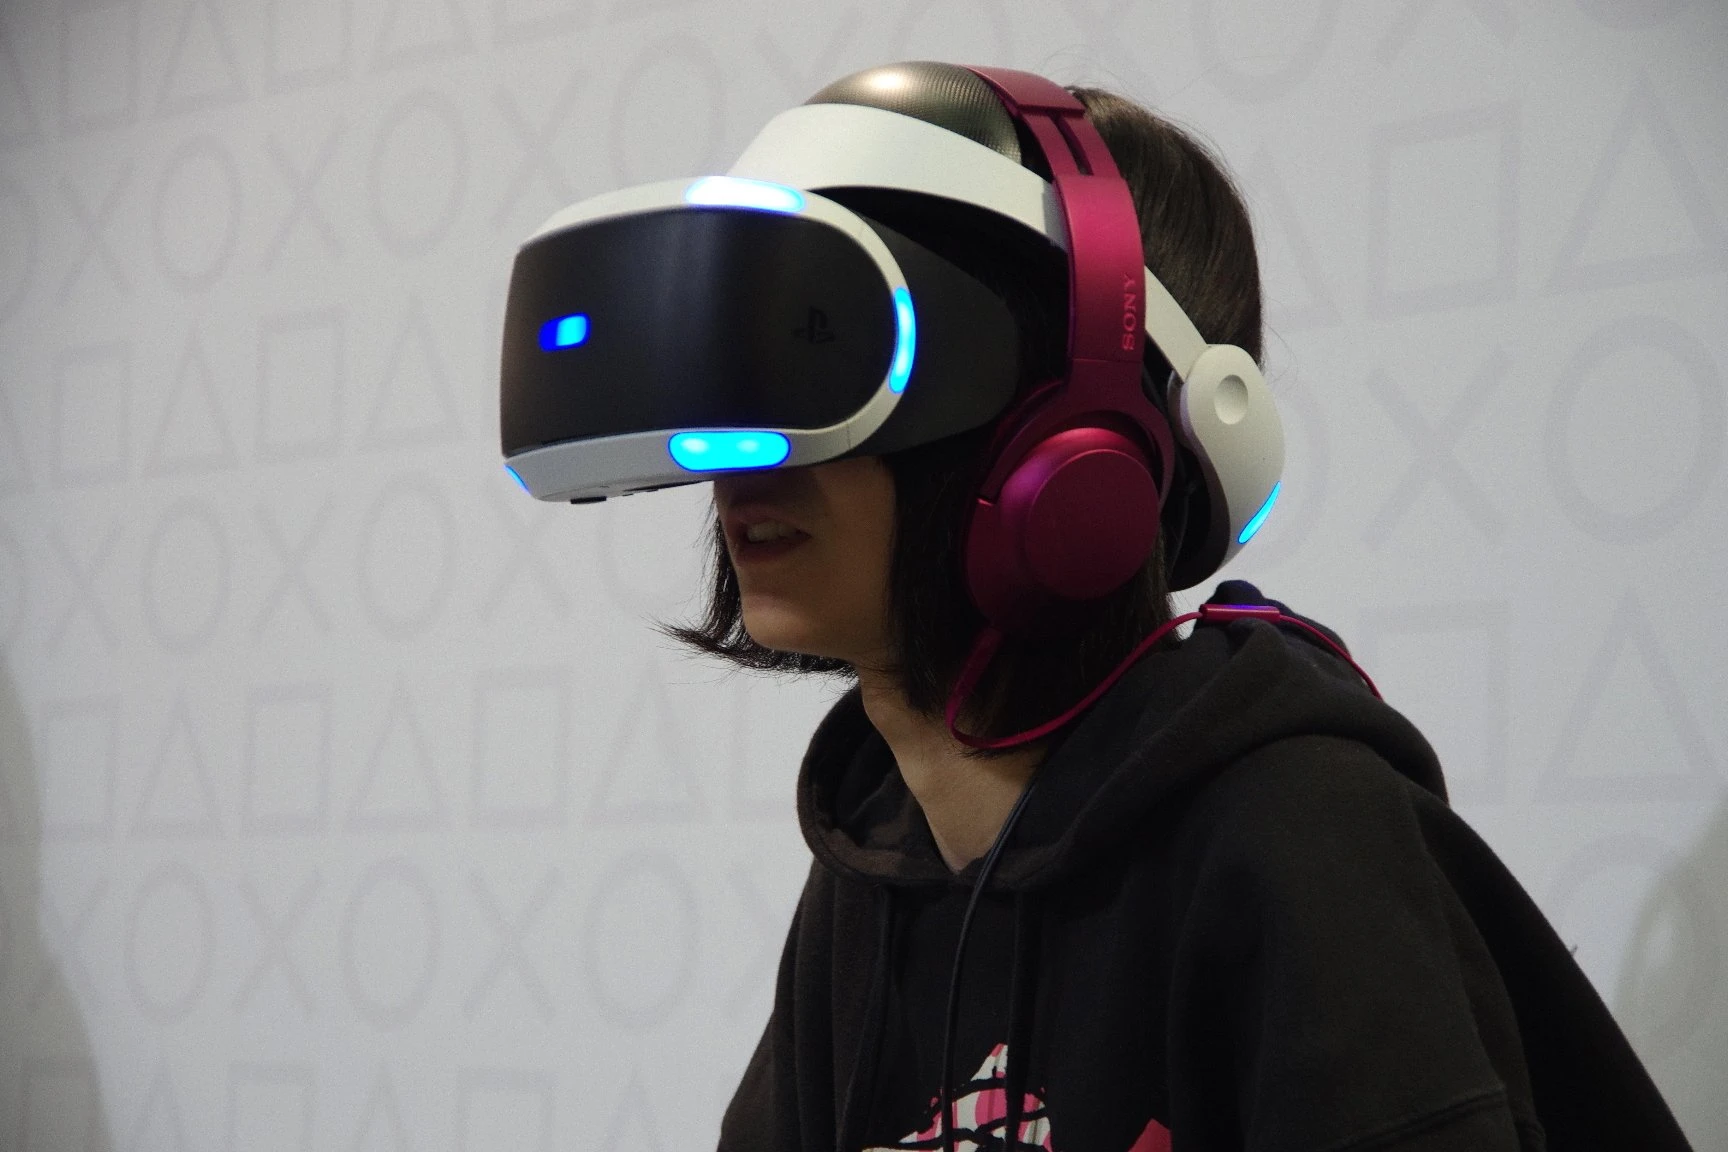 PlayStationブース「PlayStation VR」体験コーナー